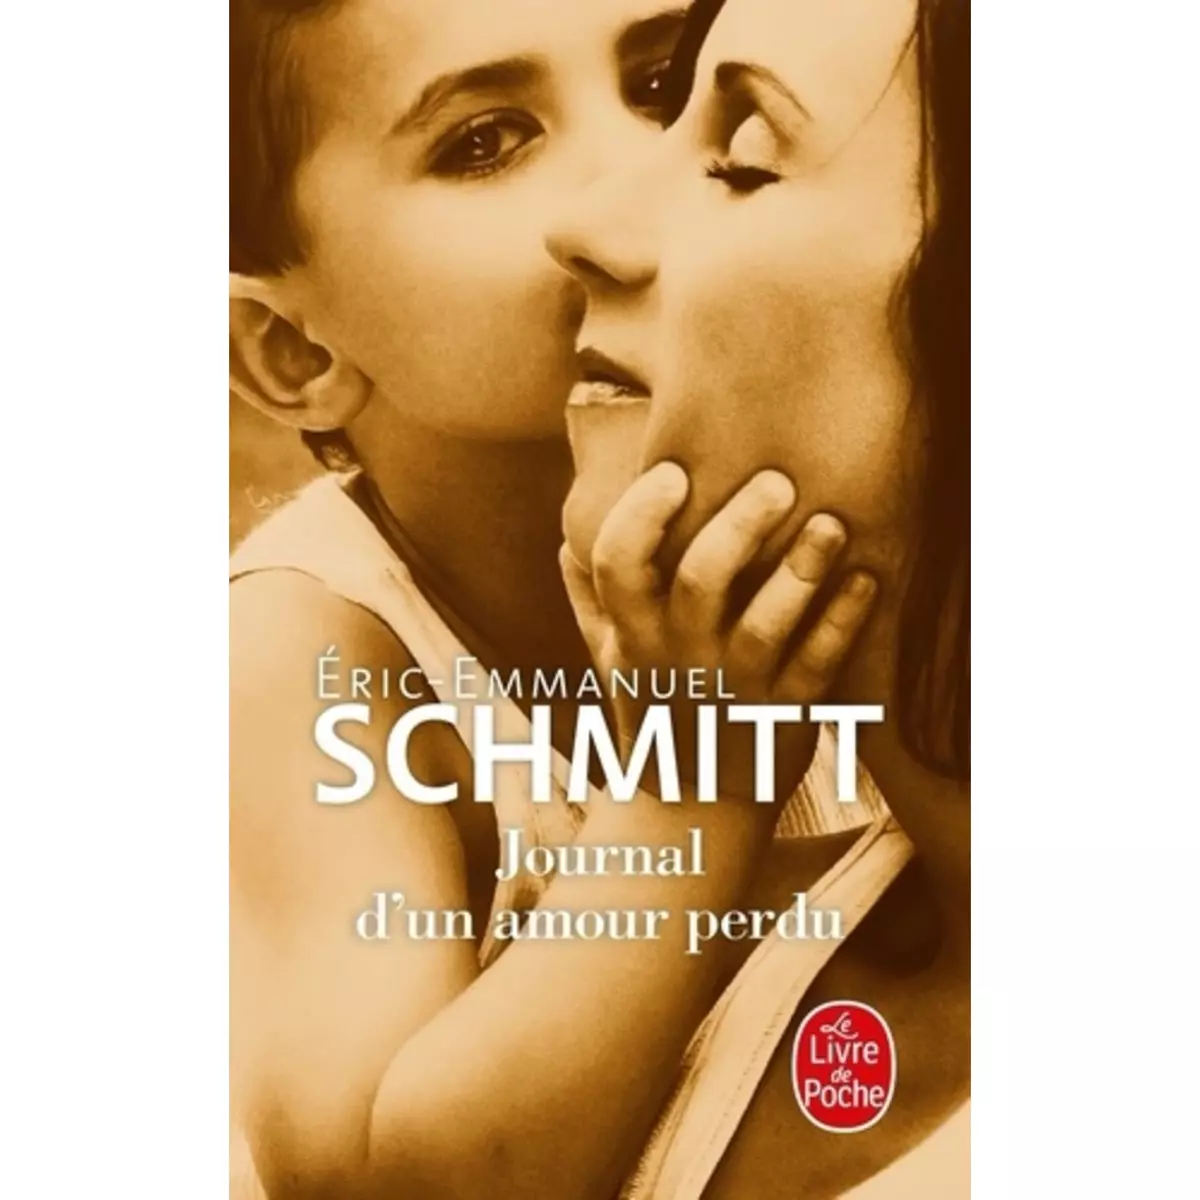  JOURNAL D'UN AMOUR PERDU, Schmitt Eric-Emmanuel